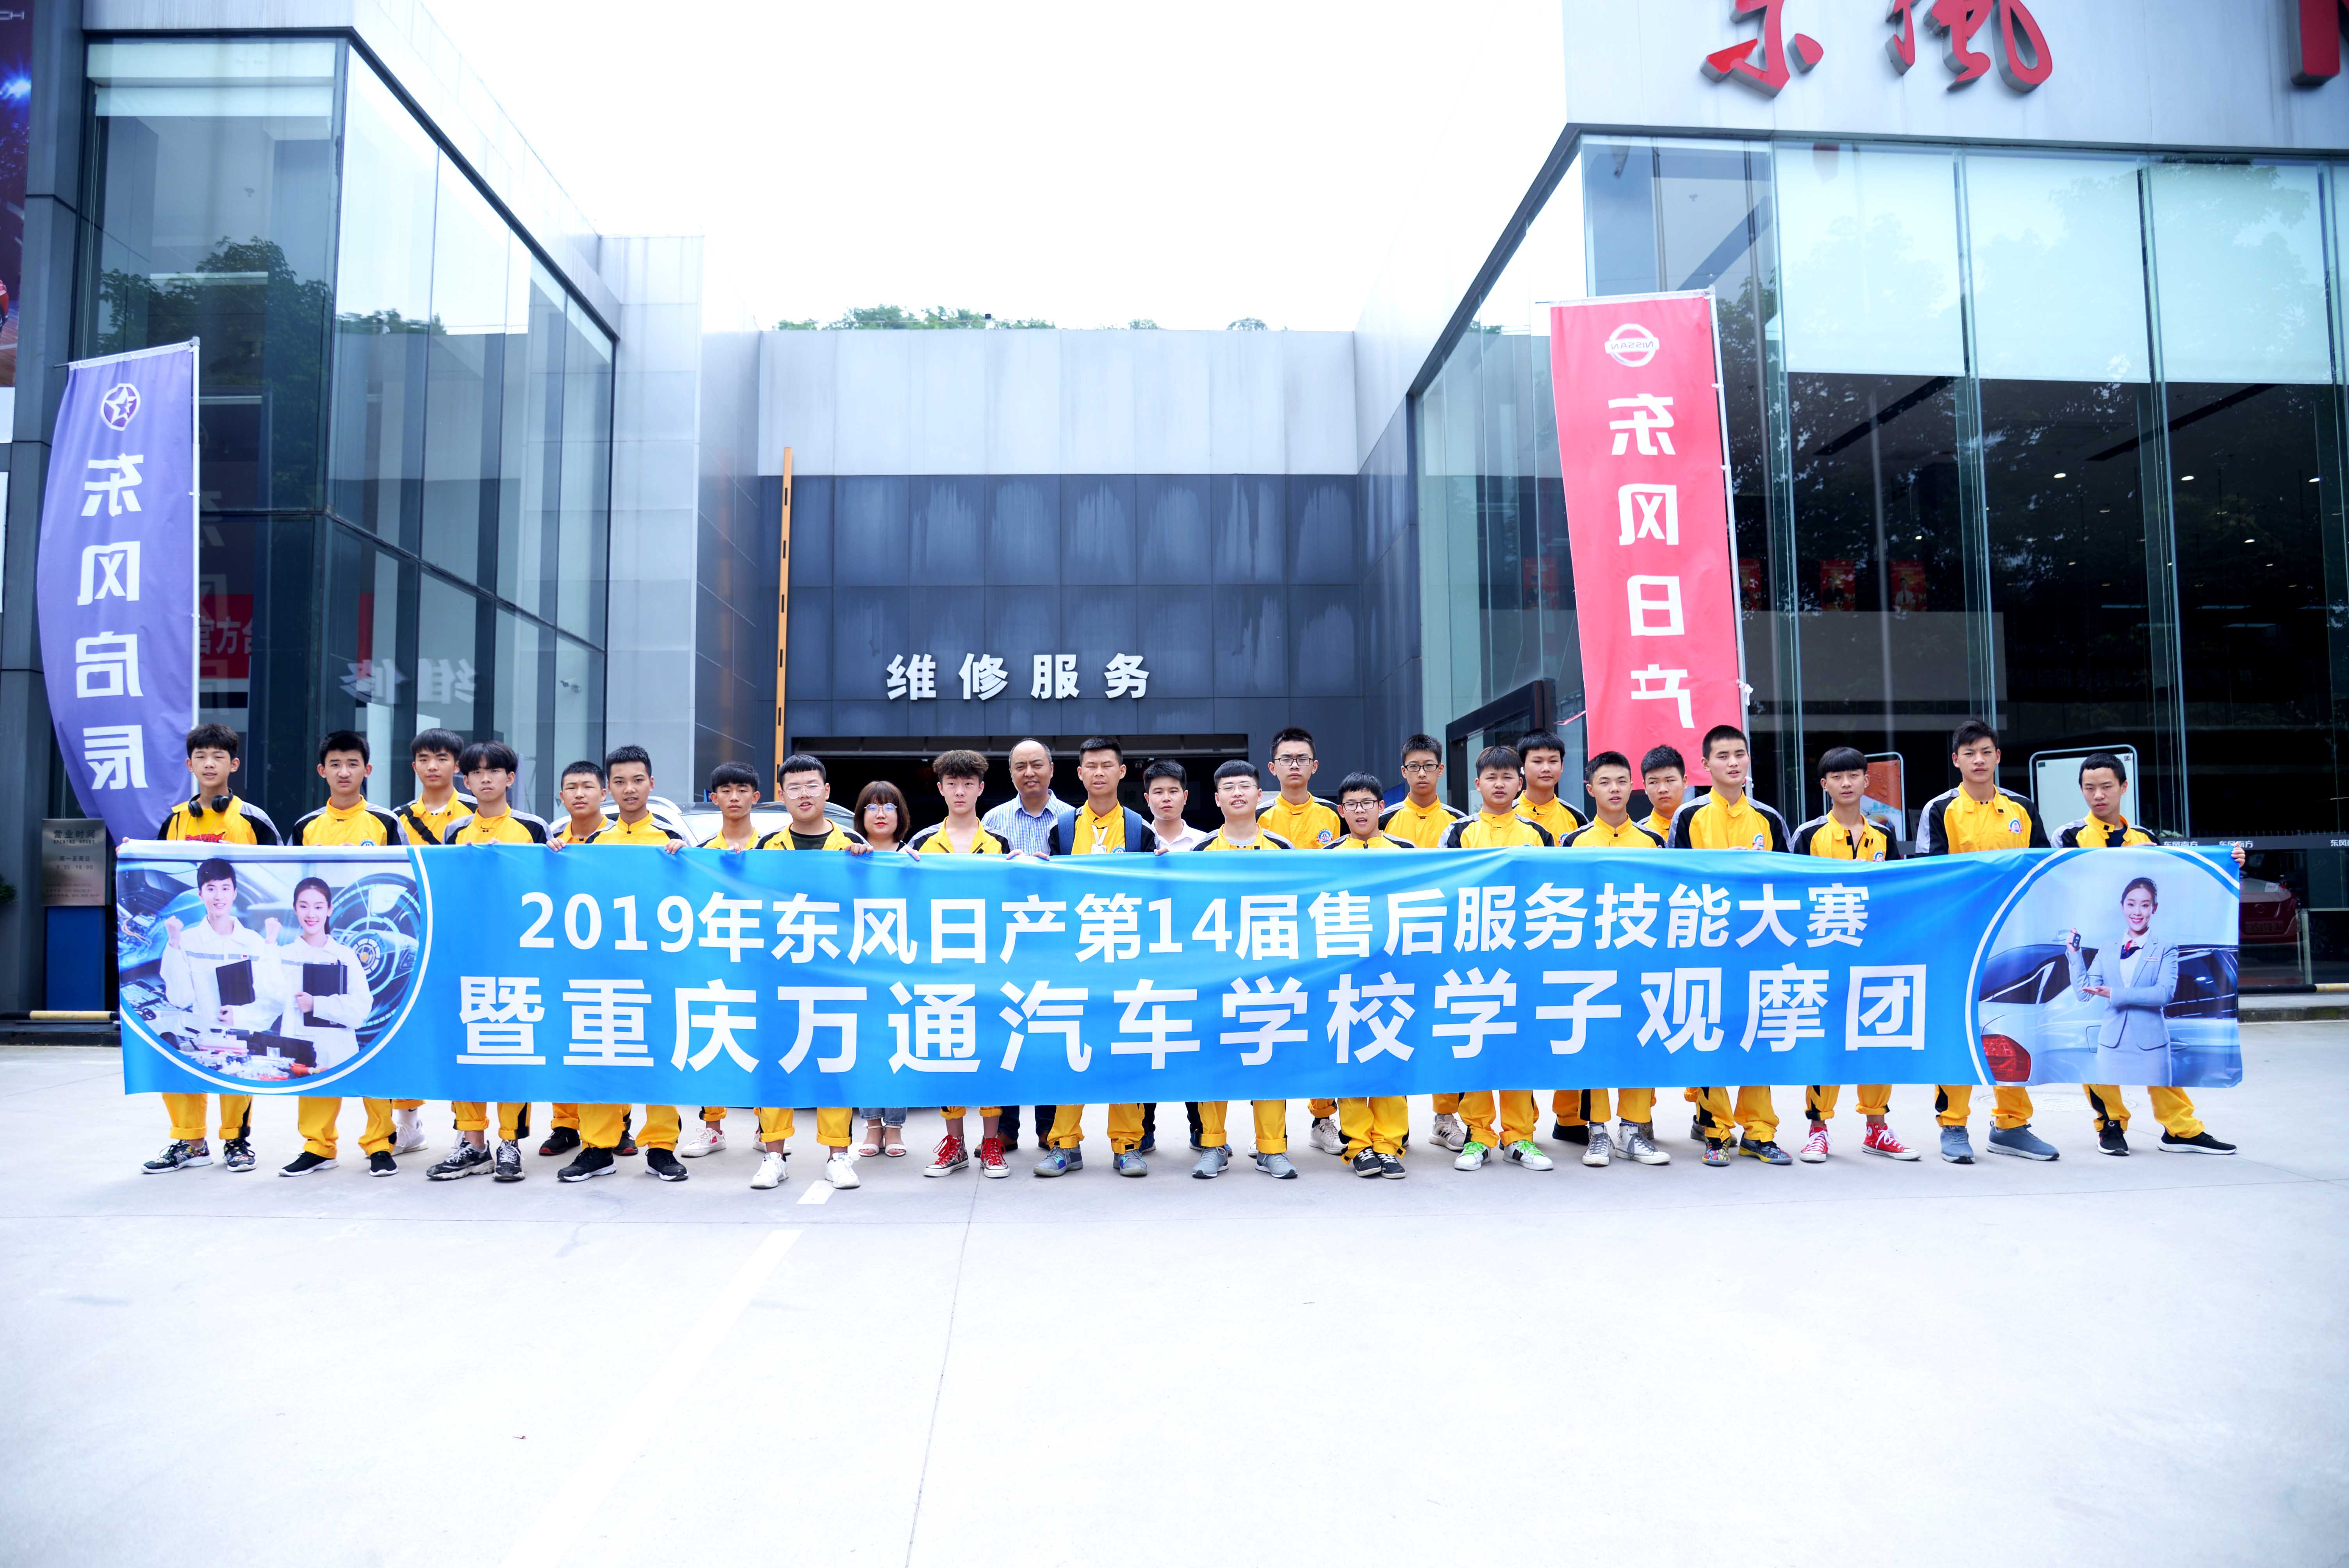 重慶萬通學子受邀參加2019年東風日產第14屆售后服務技能大賽，進行現場的觀摩學習